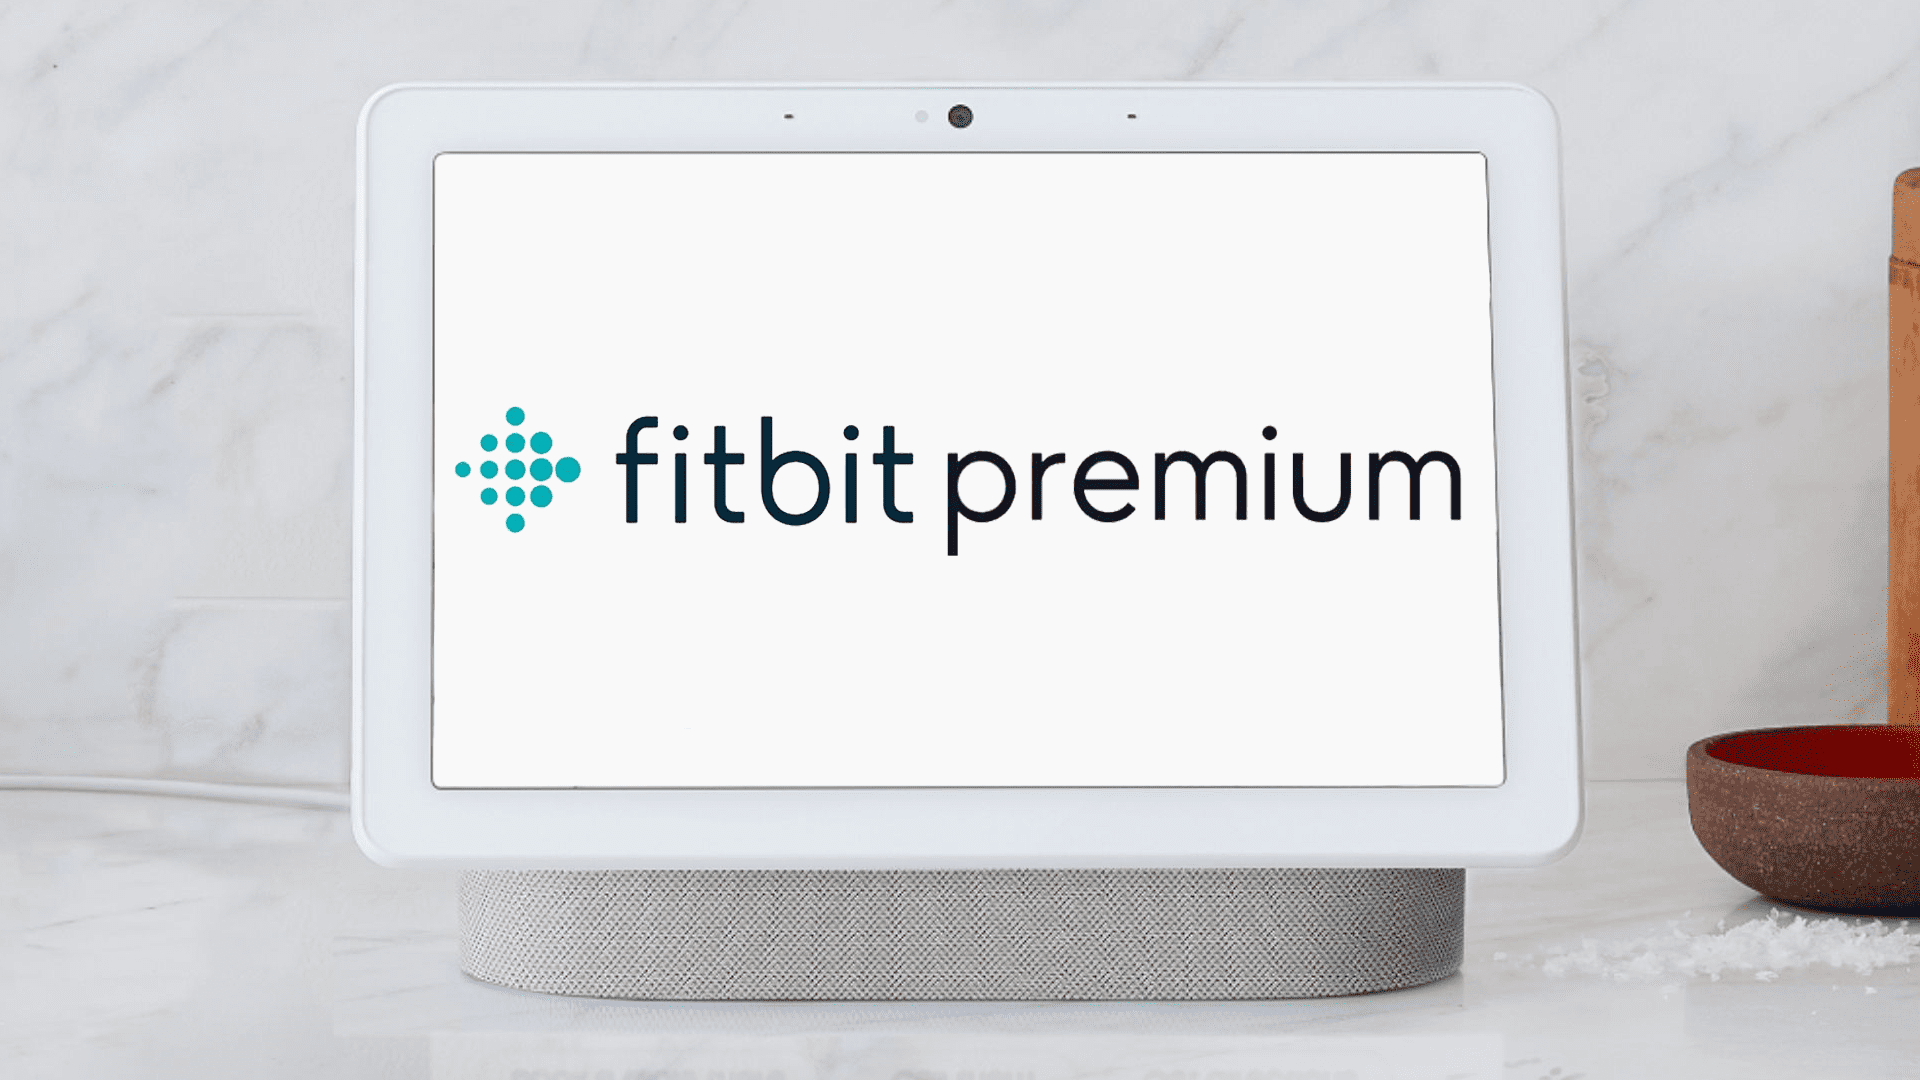 Google Nest HubBest-funktionen för att vara en Fitbit Premium-exklusiv … Vad?